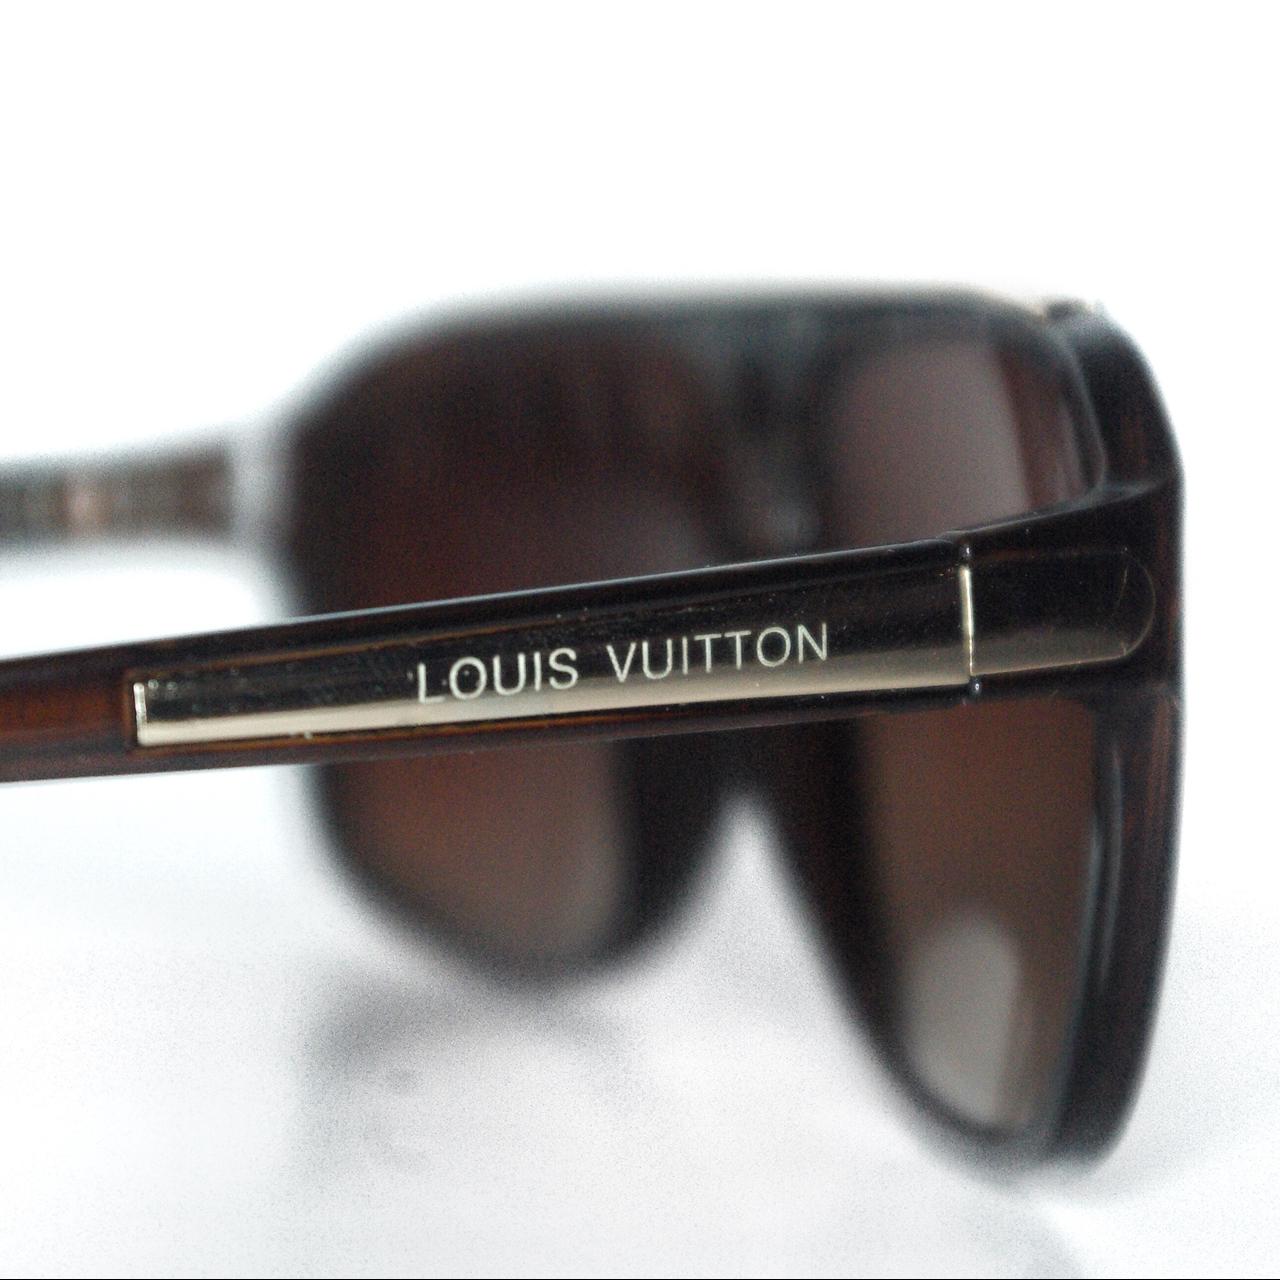 Louis Vuitton, Accessories, Louis Vuitton Evidence Sunglasses